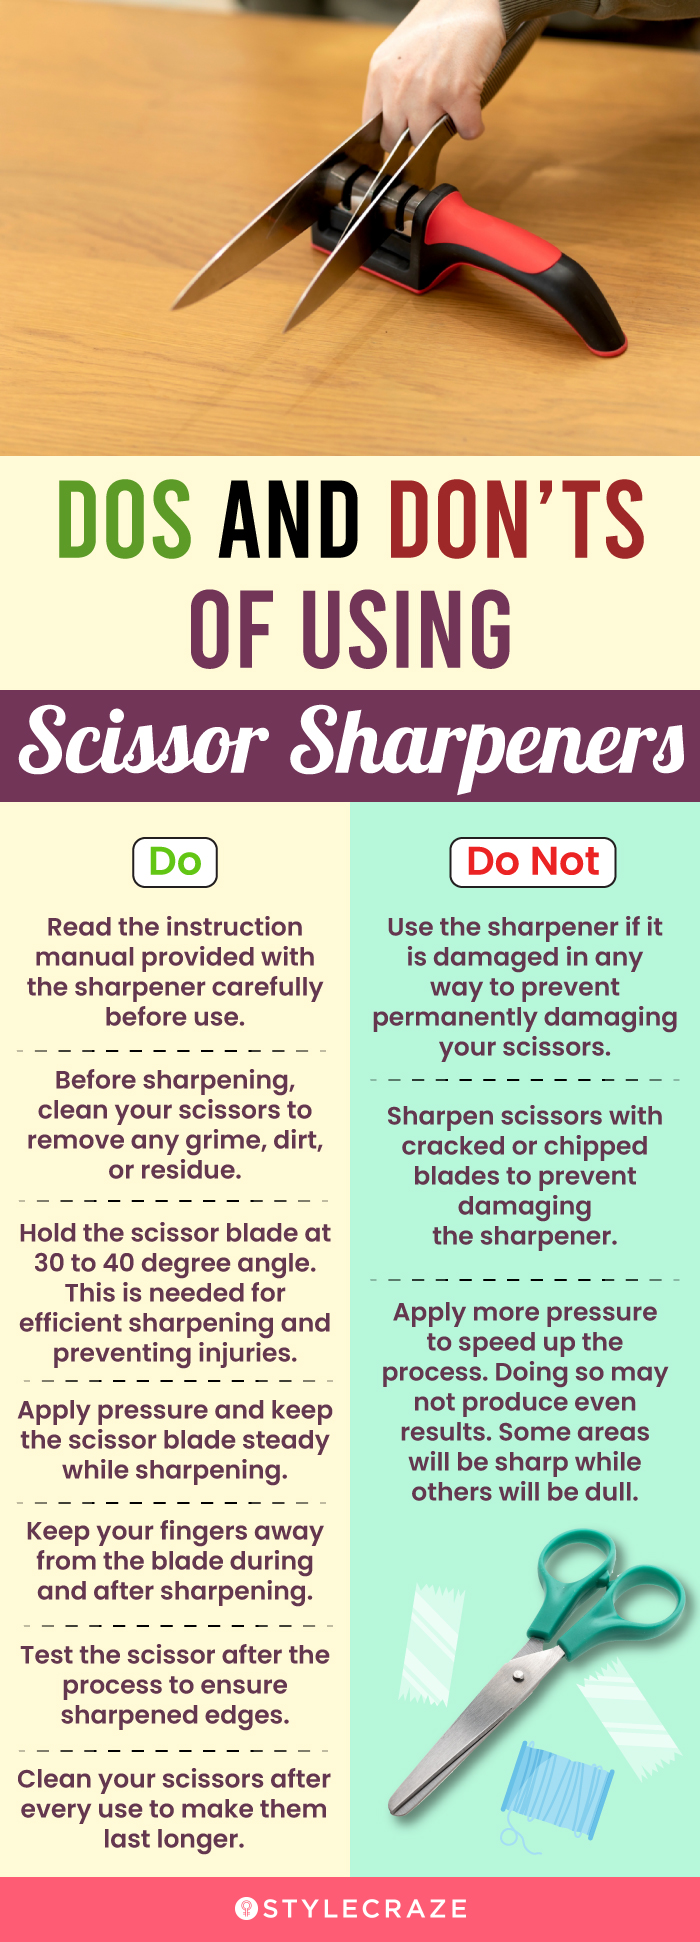 Fiskars Sewsharp Scissor Sharpener : Sewing Parts Online